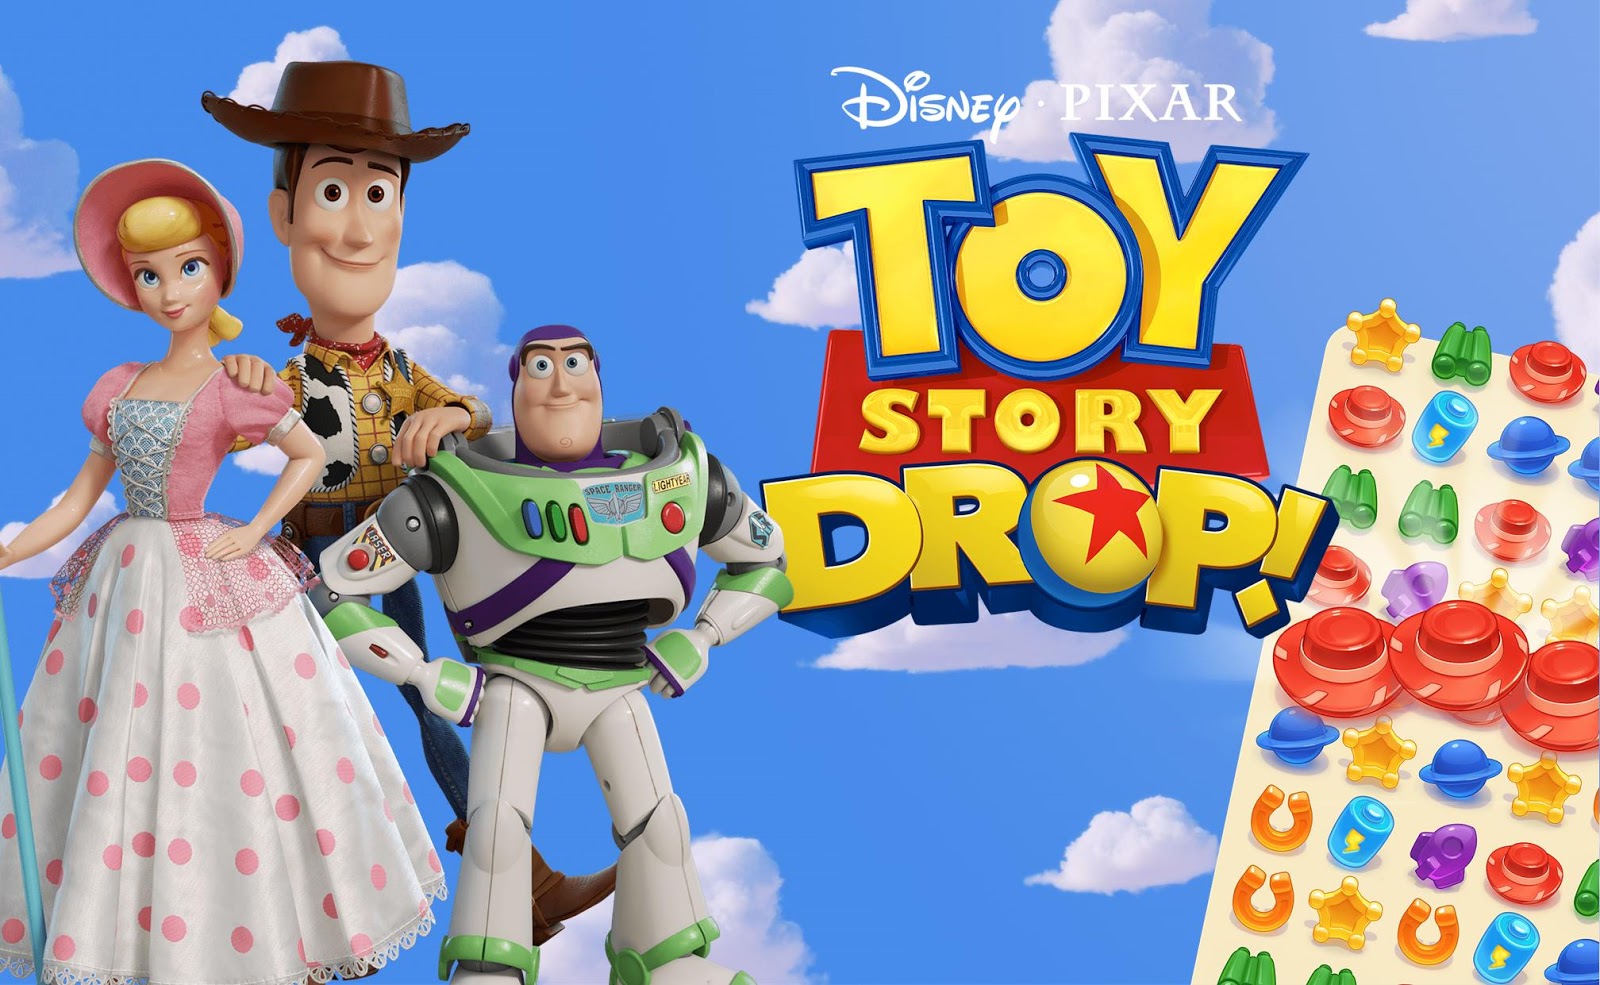 Toy Story Drop! – phiên bản game để quảng cáo cho phim câu truyện đồ chơi 4 sắp ra mắt